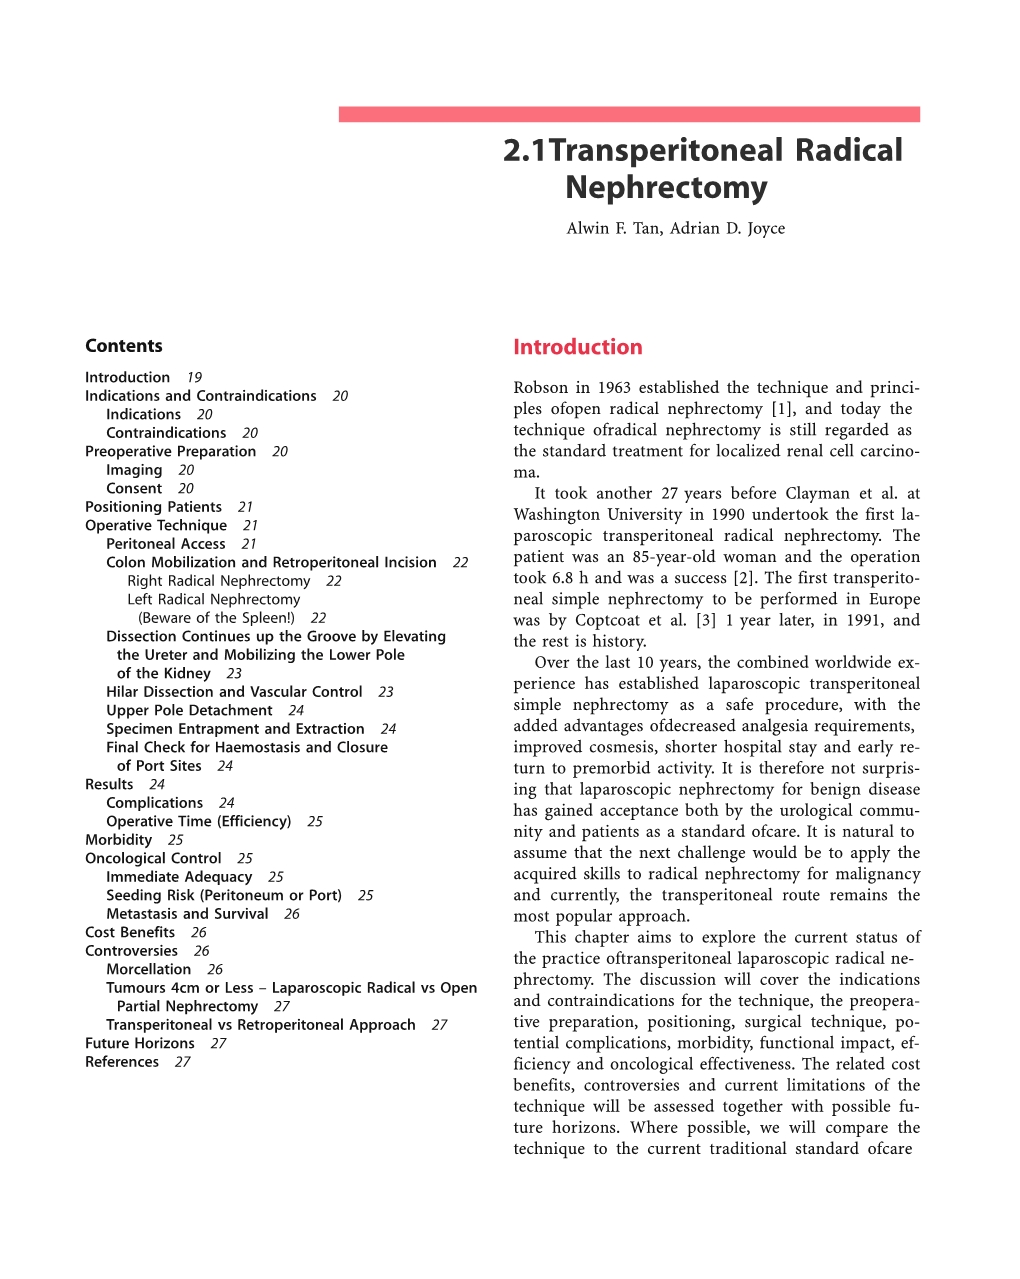 2.1 Transperitoneal Radical Nephrectomy